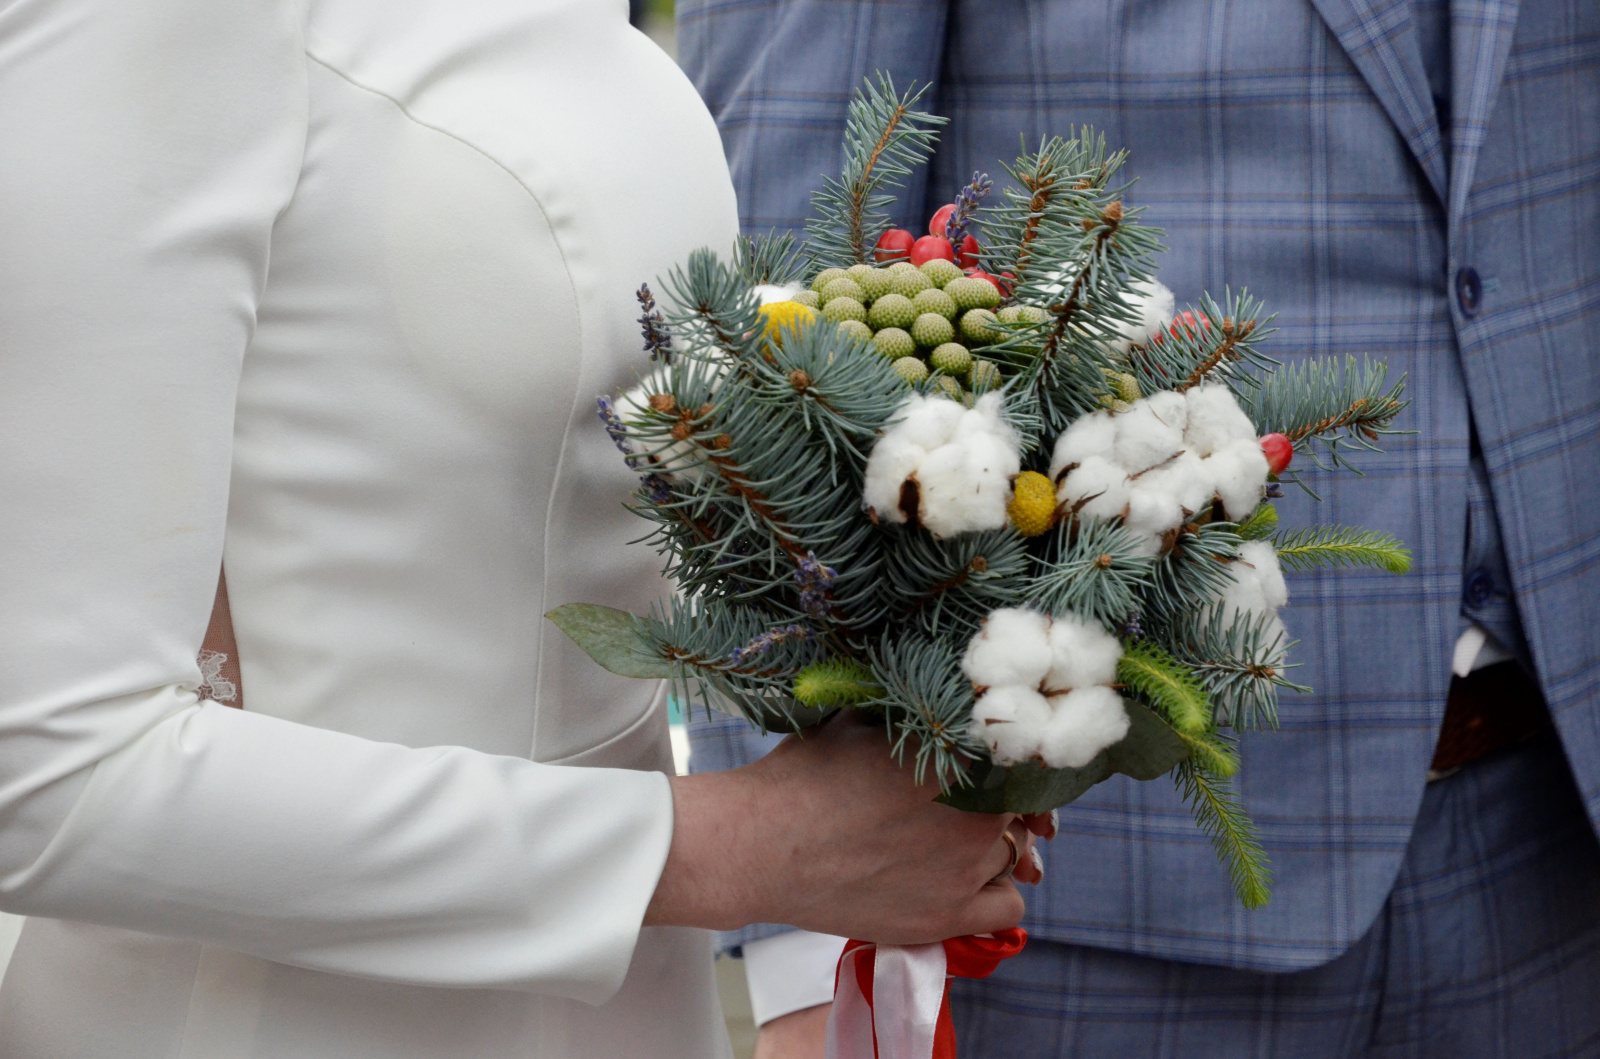 Официально стать мужем и женой 19 сентября в Москве планируют более 800 пар